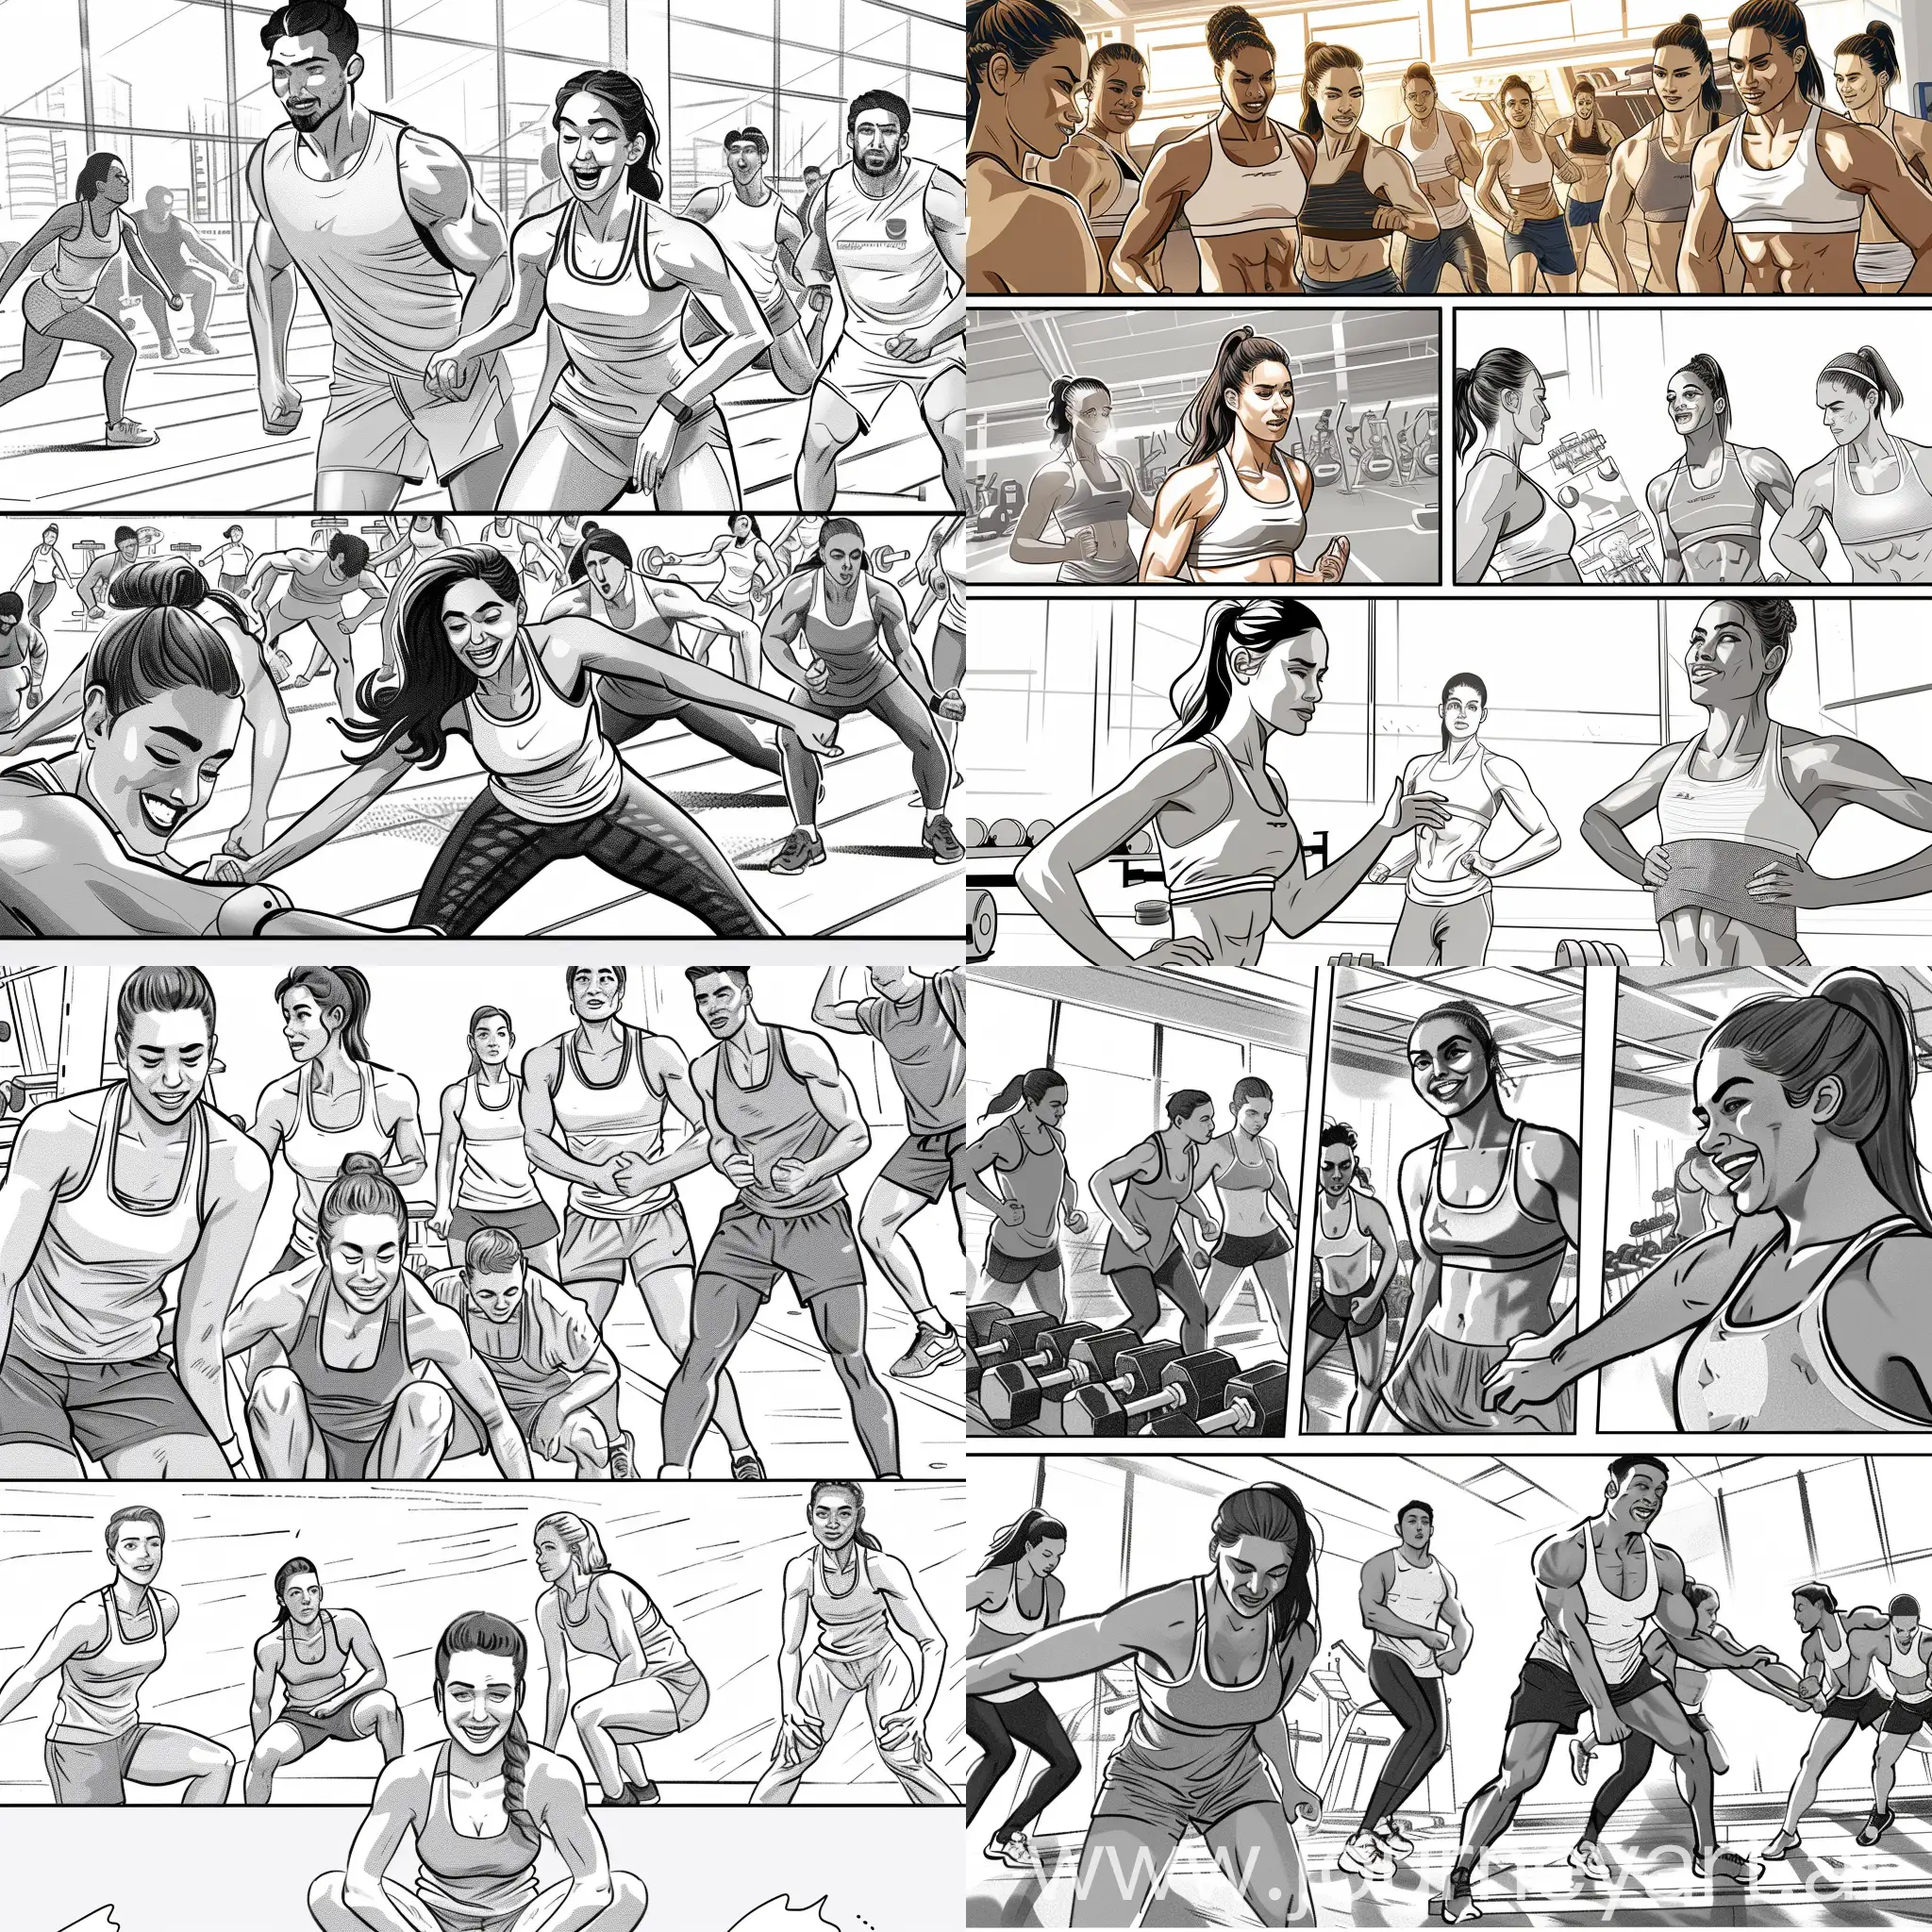 Dynamic-Gym-Workouts-Comfortable-Sportswear-Advertisement